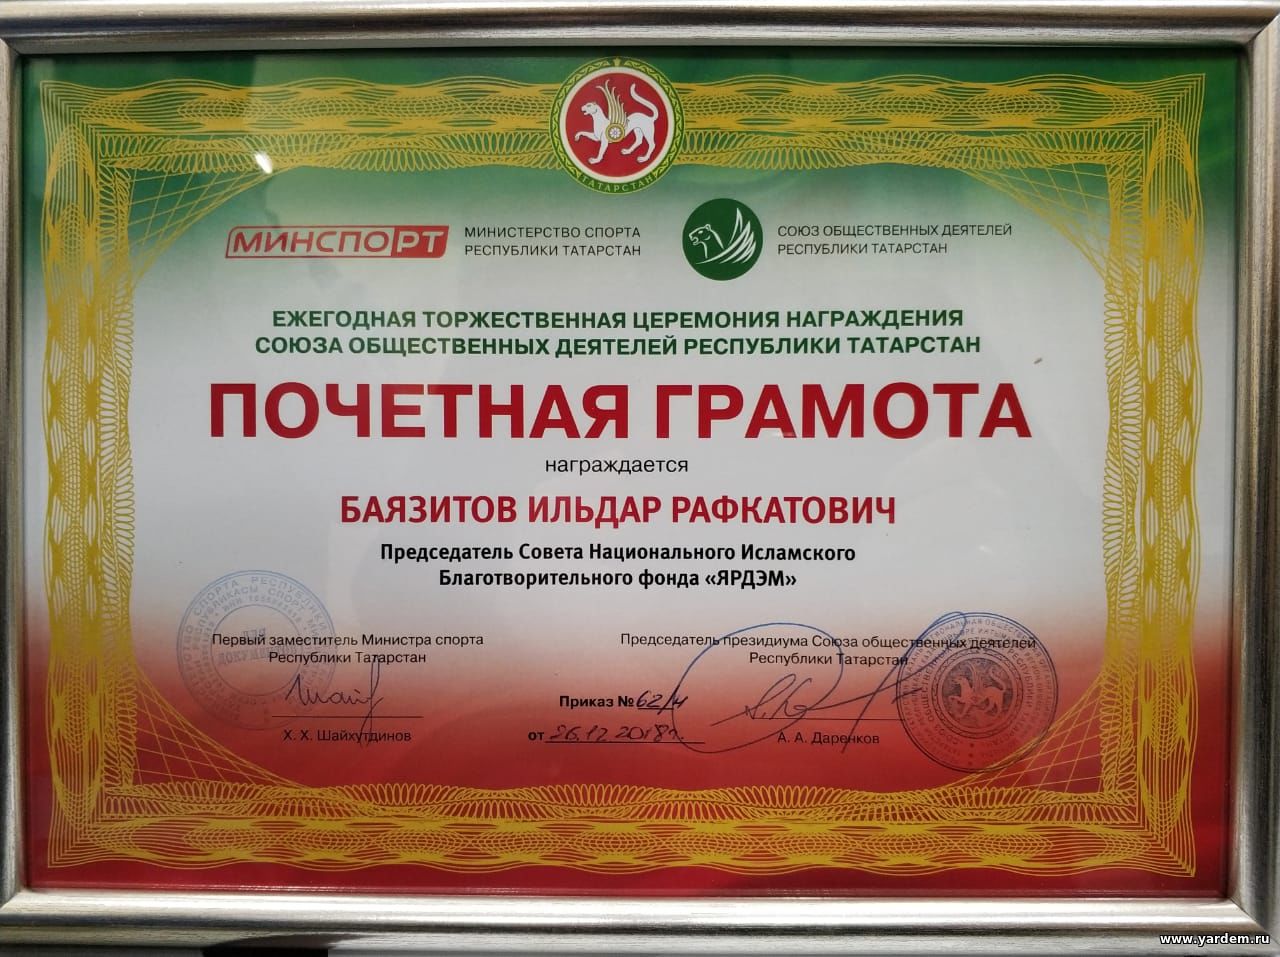 Илдар хазрат Баязитов награжден Почетной грамотой Минспорта РТ и Союза общественных деятелей РТ. Общие новости